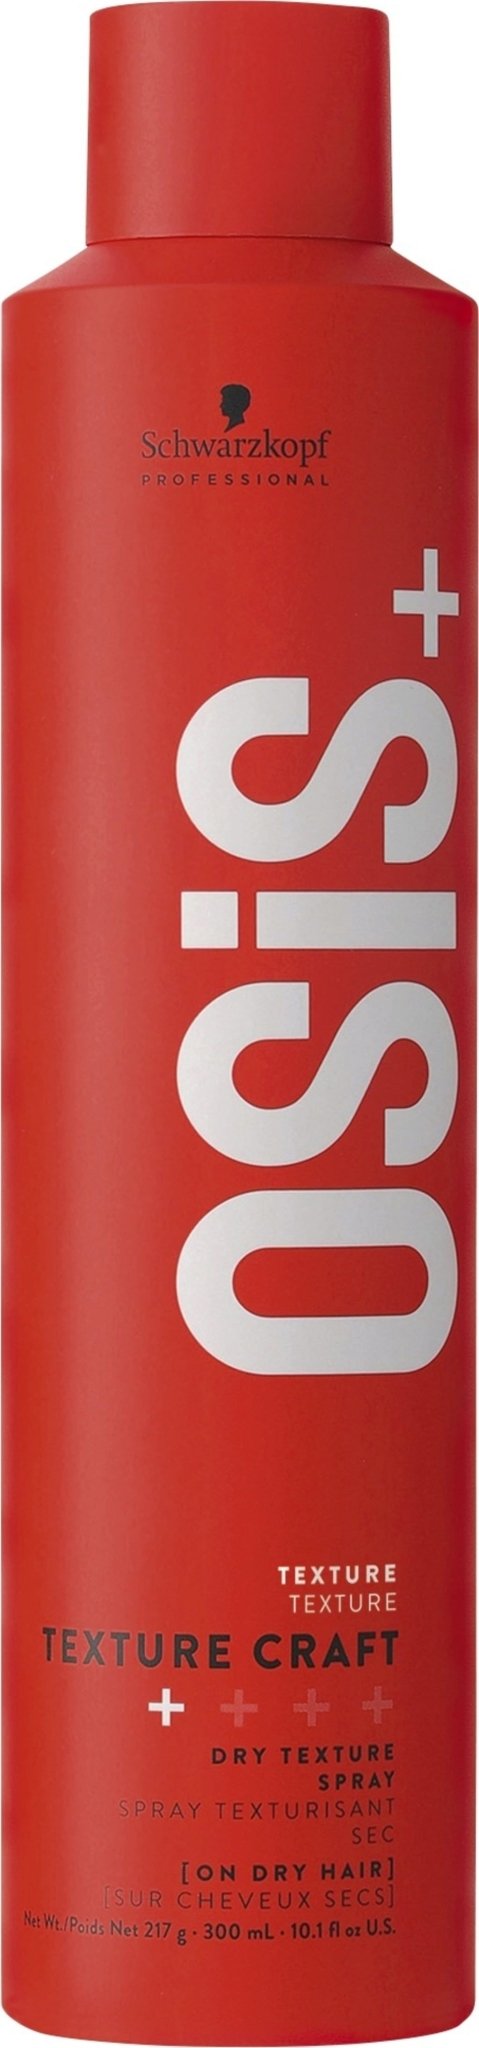 Schwarzkopf OSiS+ Texture Craft Hair Spray 300Ml - AllurebeautypkSchwarzkopf OSiS+ Texture Craft Hair Spray 300Ml